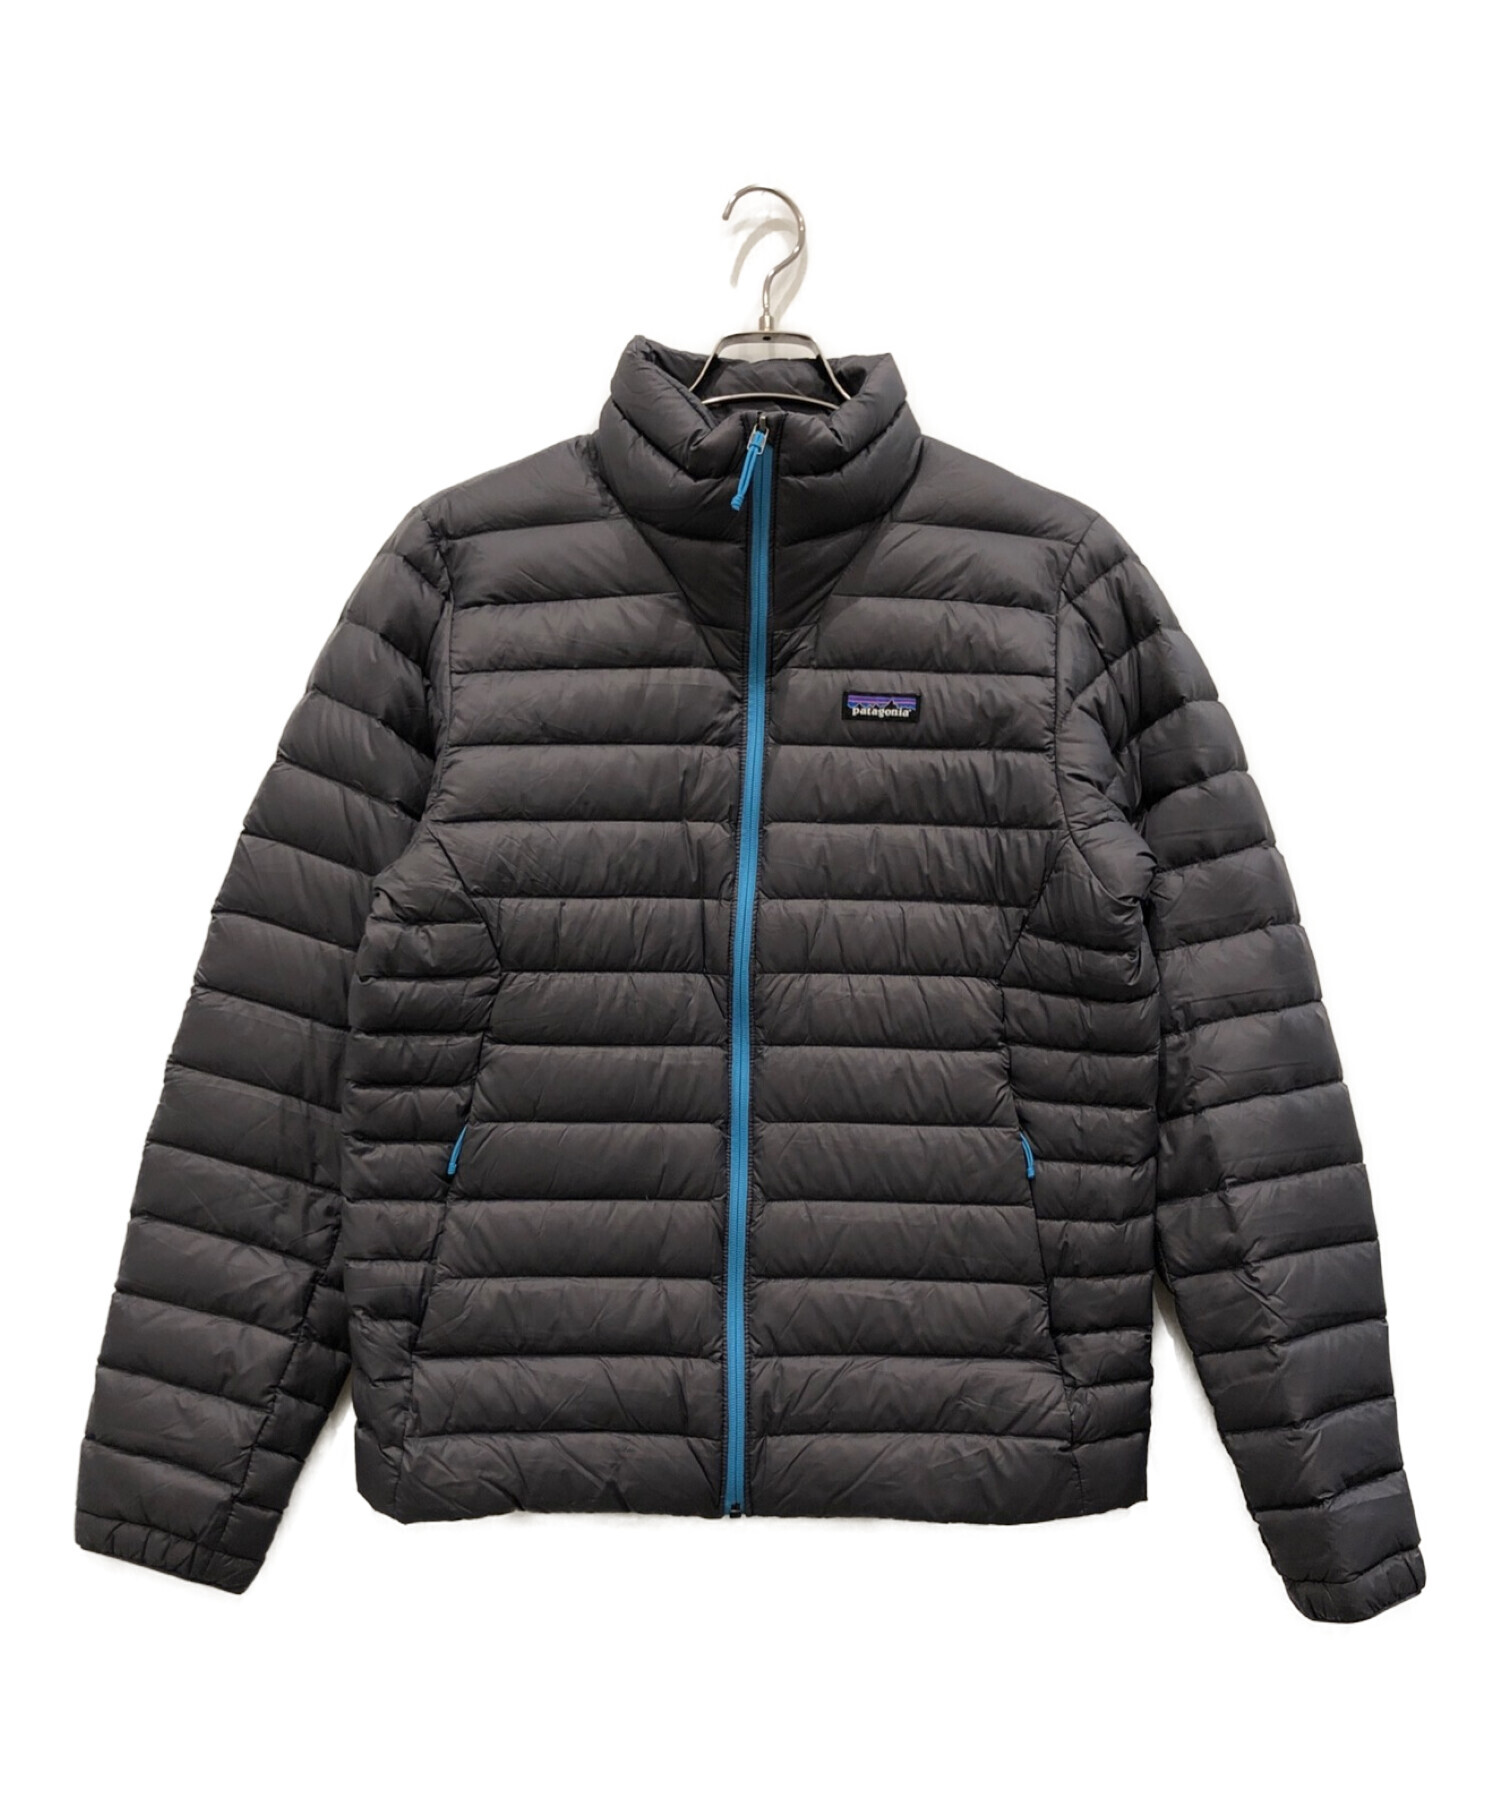 Patagonia (パタゴニア) ダウン・セーター ジャケット グレー サイズ:M